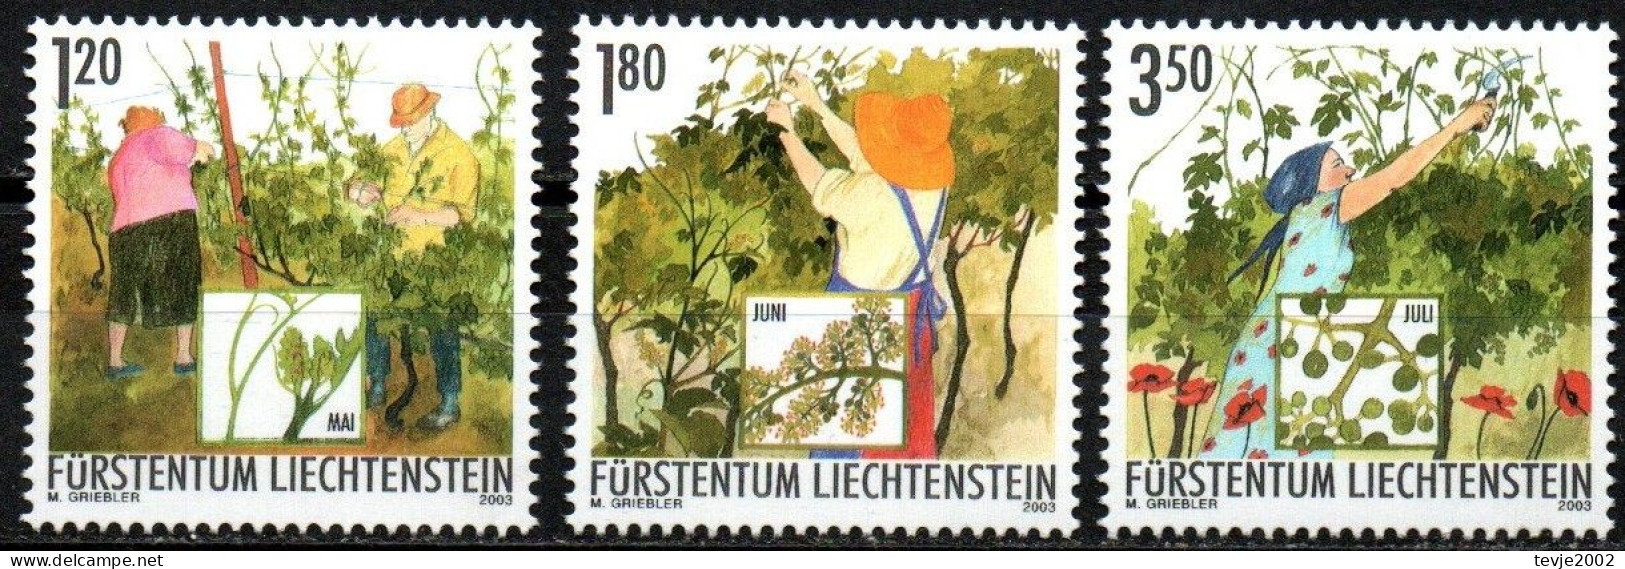 Liechtenstein 2003 - Mi.Nr. 1316 - 1318 - Postfrisch MNH - Weinbau Winzer Wine Growing Winemaker - Agricoltura